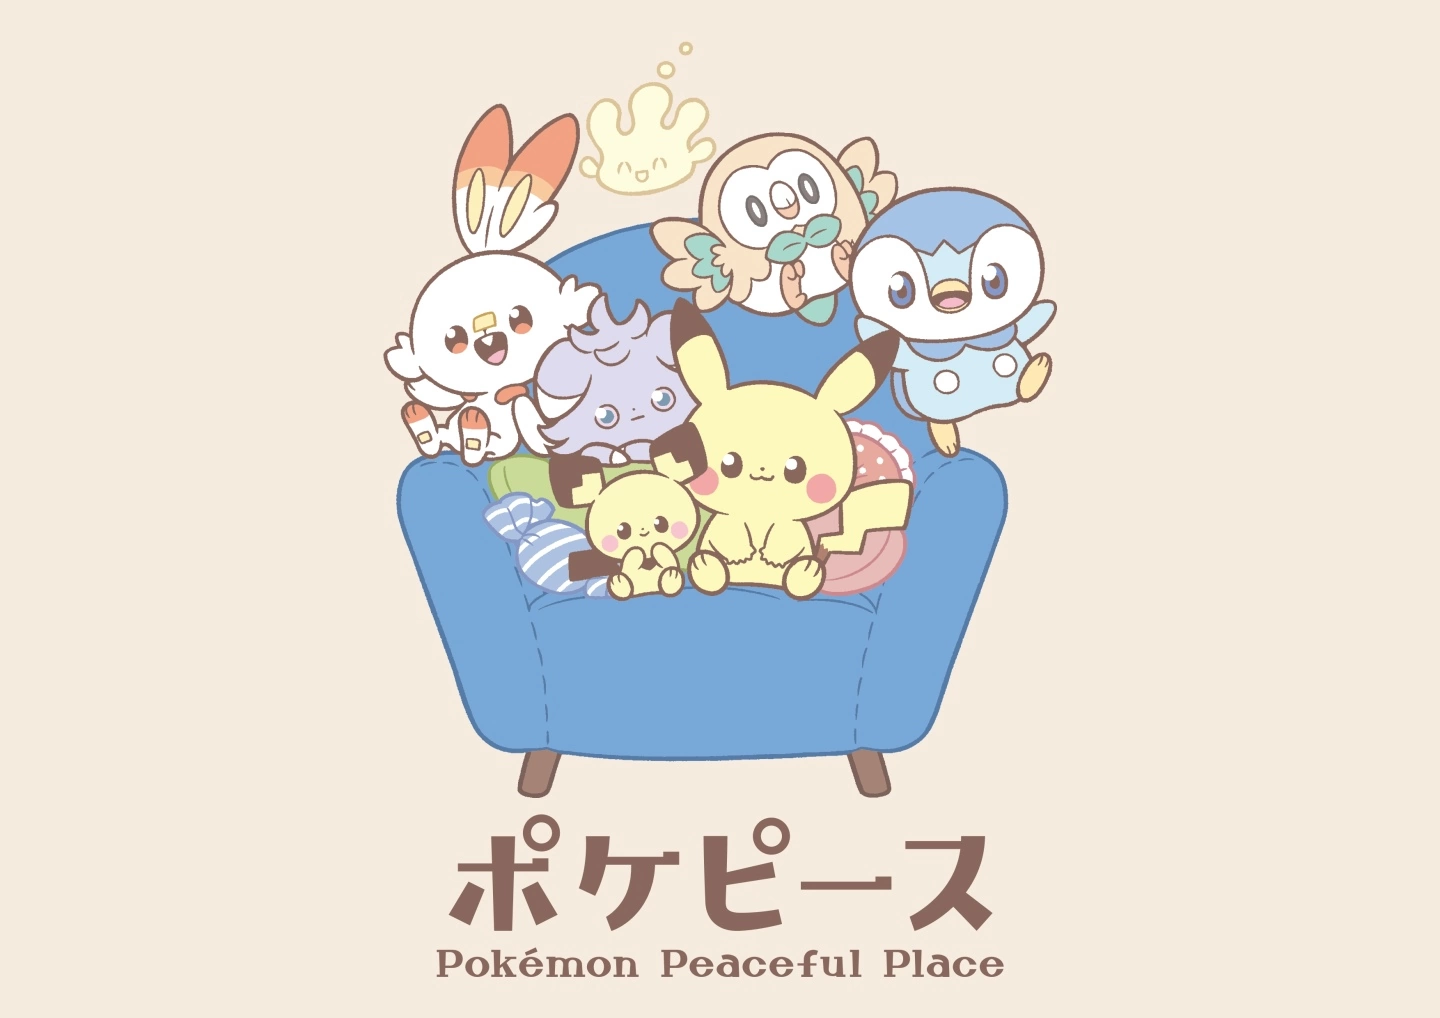 《宝可梦》全新企划「Pokémon Peaceful Place 宝可梦和平」正式发表